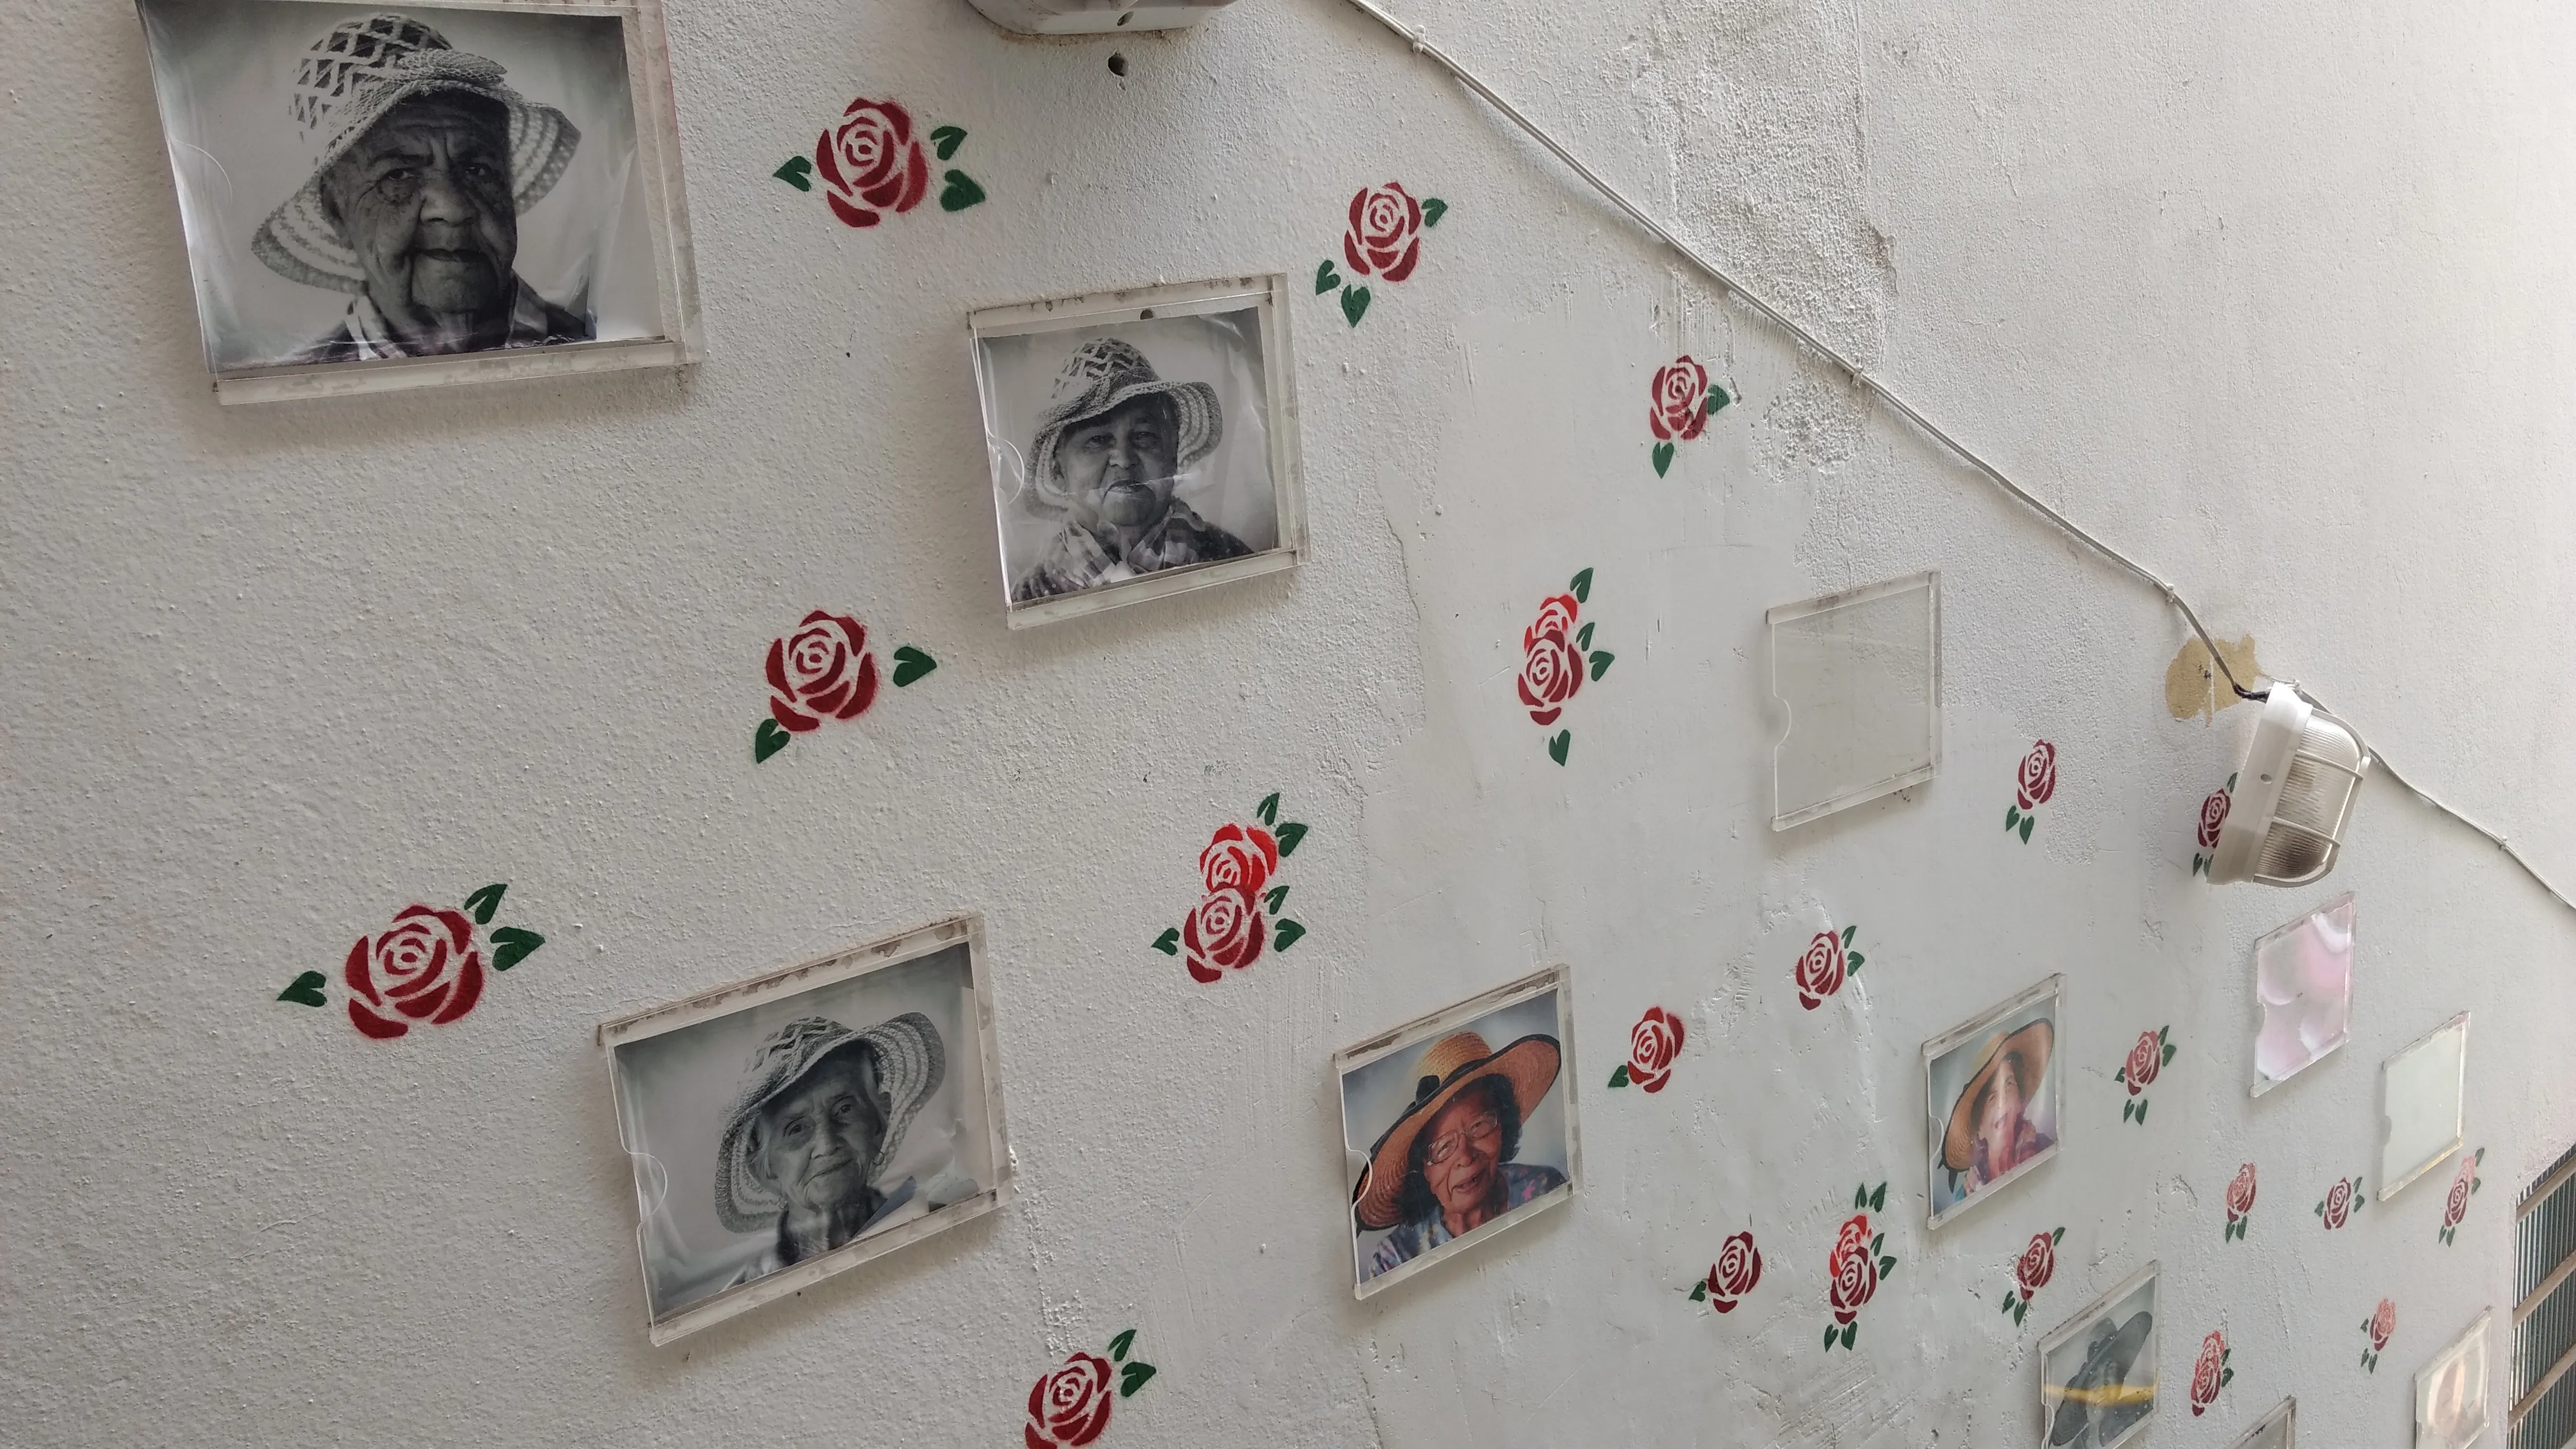 Fotografia digital de uma parede com fotos de idosos em preto e branco e pinturas de flores vermelhas.